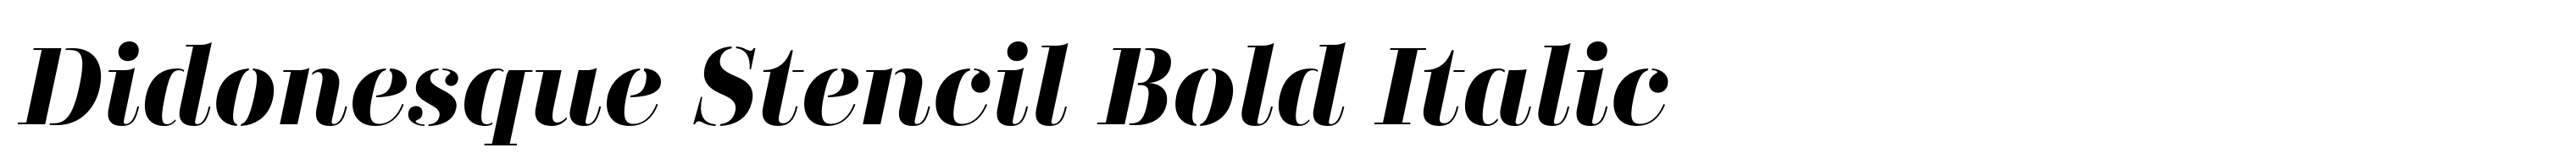 Didonesque Stencil Bold Italic